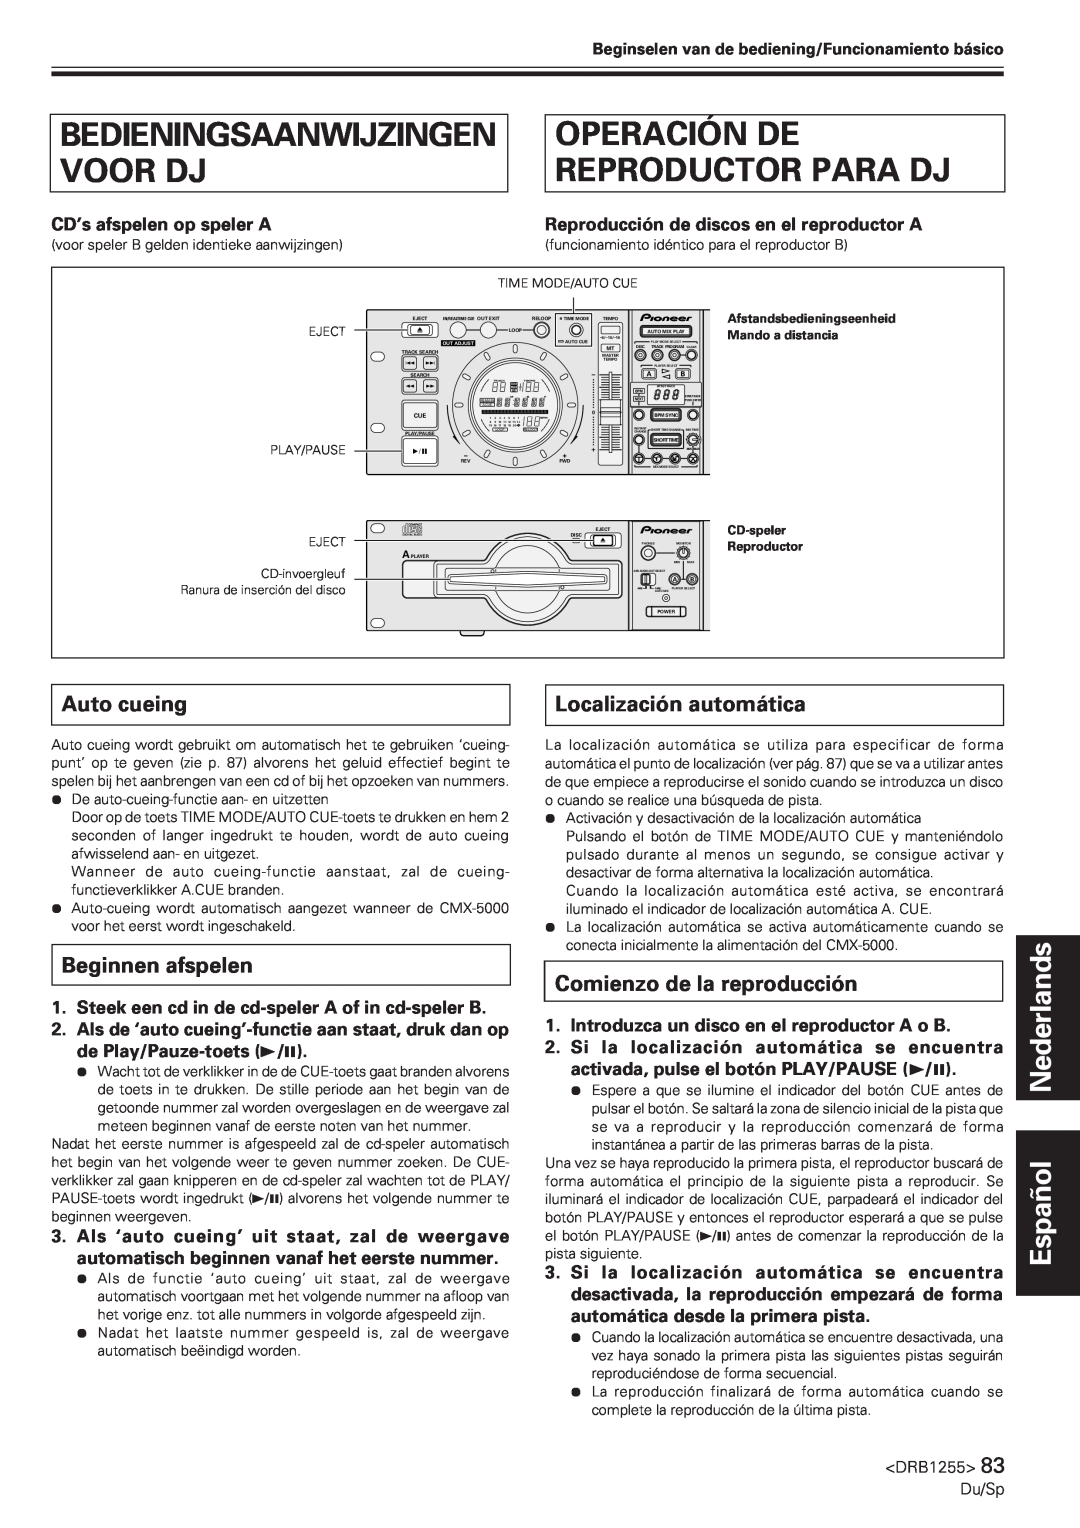 Pioneer CMX-5000 Operación De Reproductor Para Dj, Bedieningsaanwijzingen Voor Dj, Beginnen afspelen, Español Nederlands 